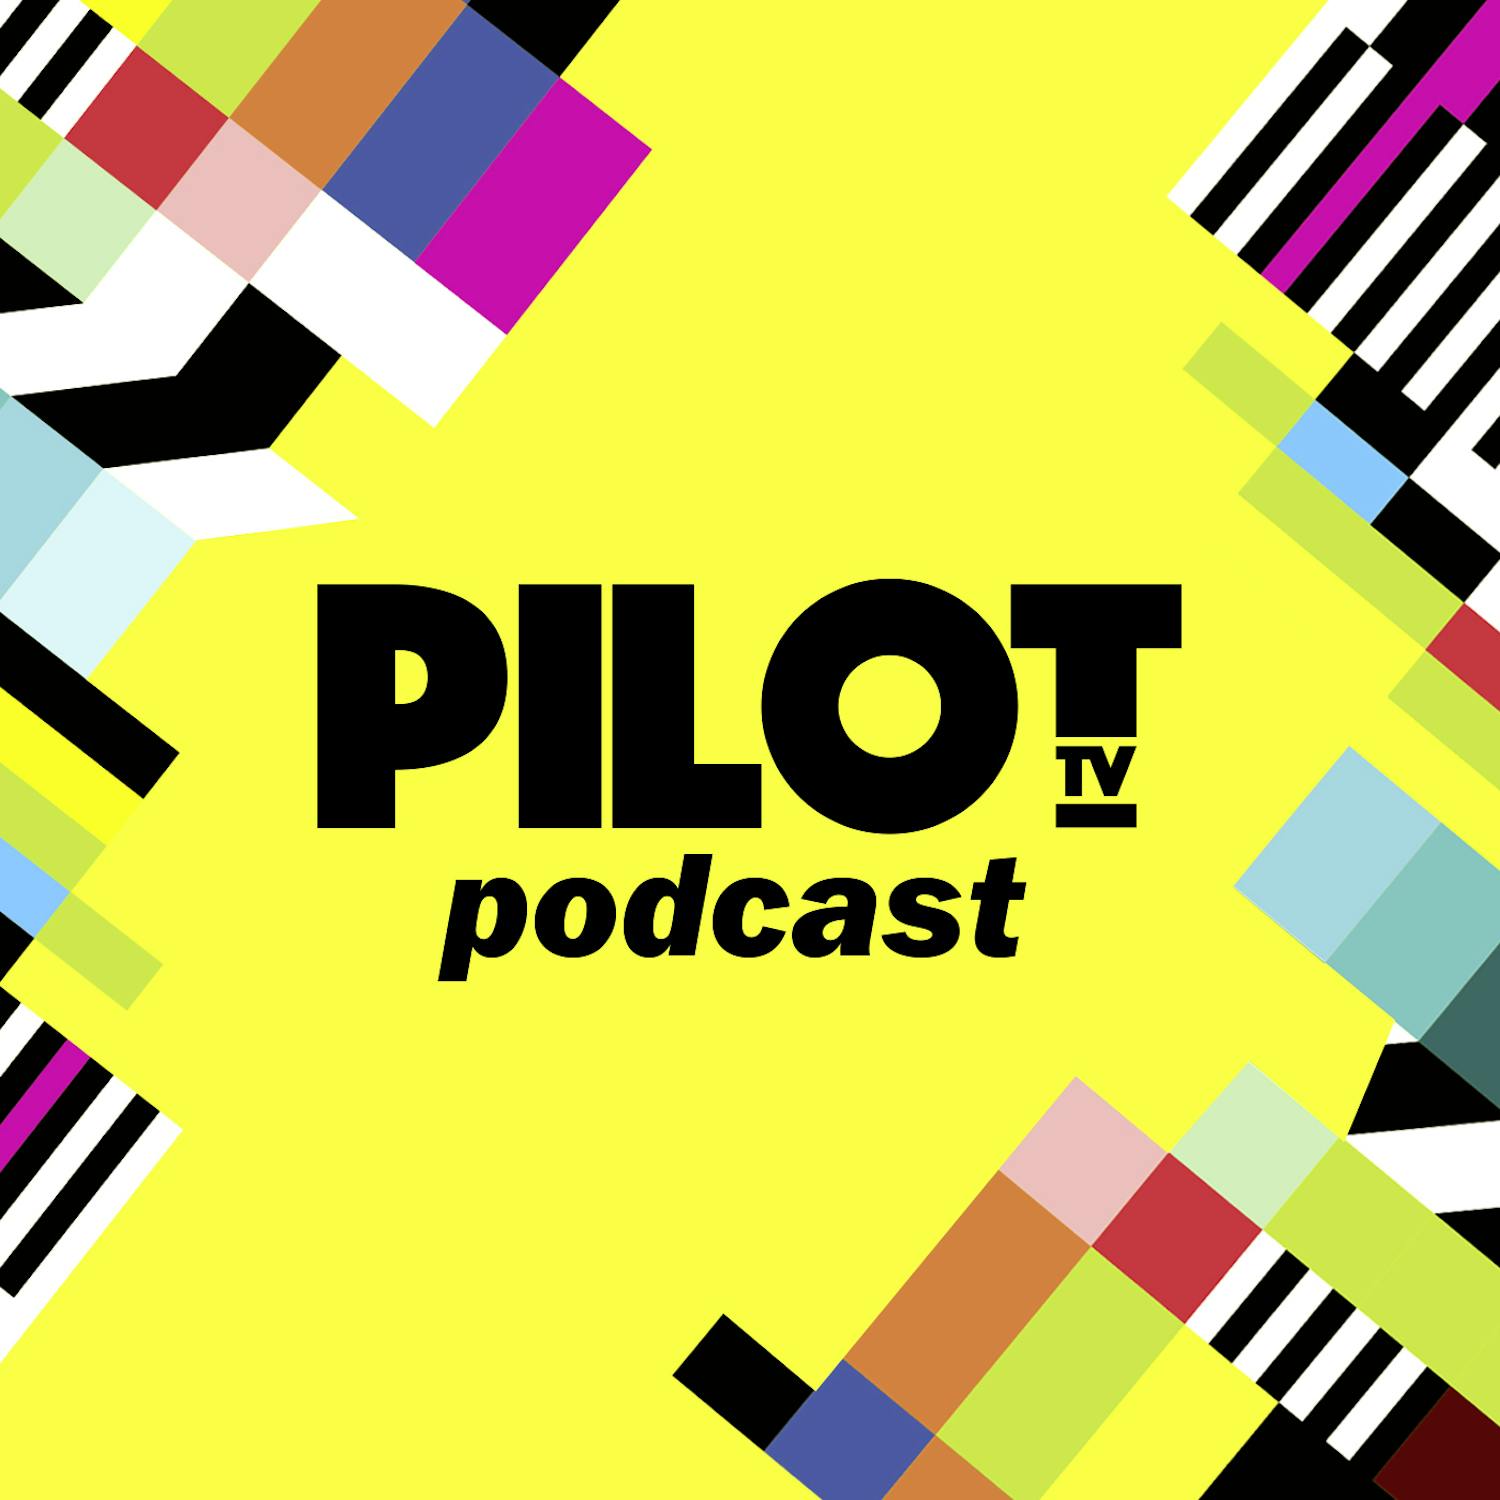 Pilot TV Podcast podcast show image